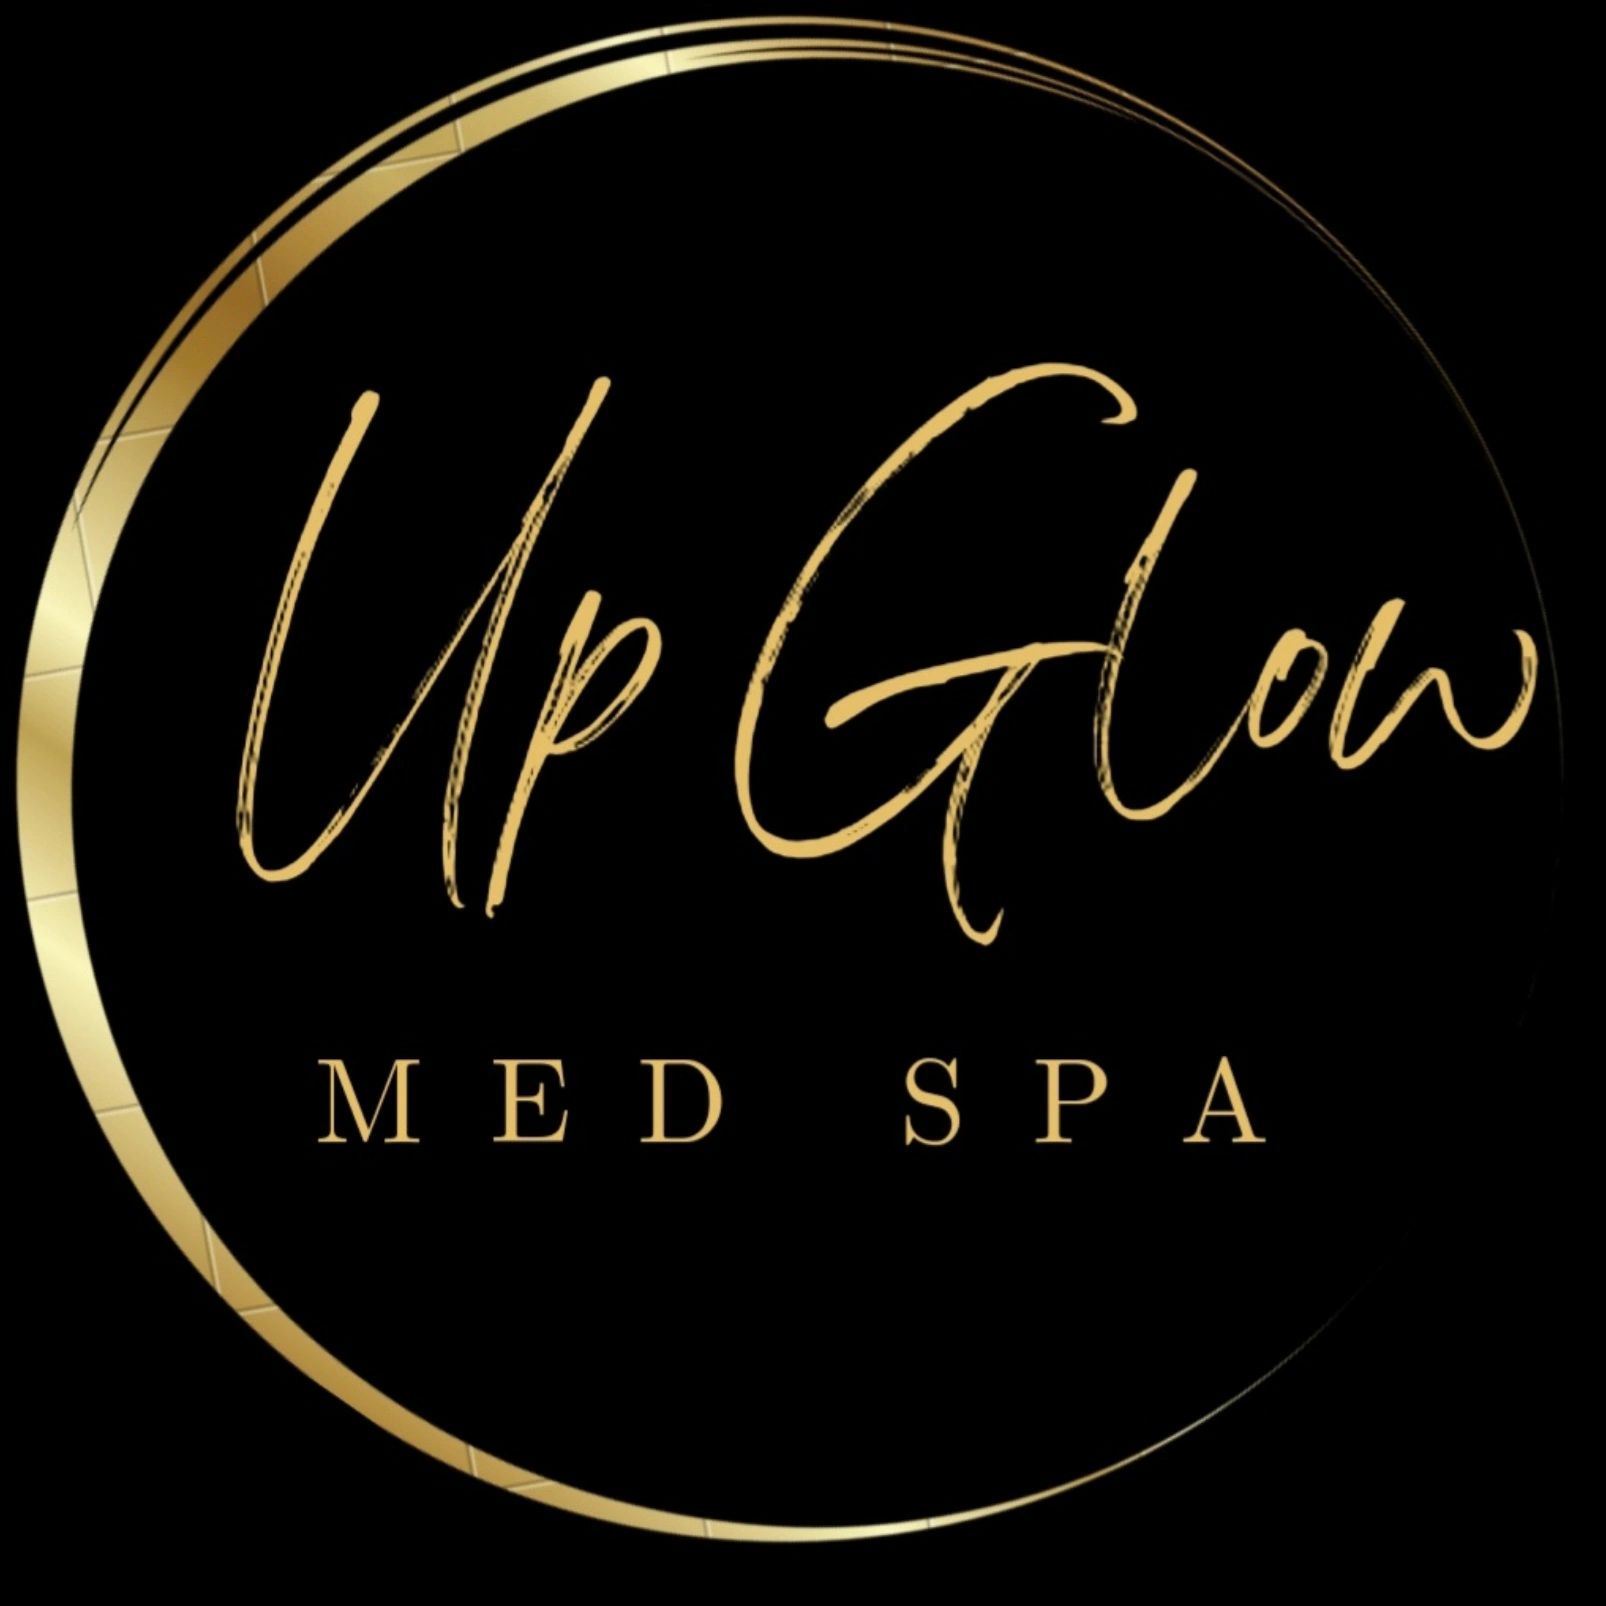 MedSpa specials near me - Skin Revive MD SPA - Med Spa